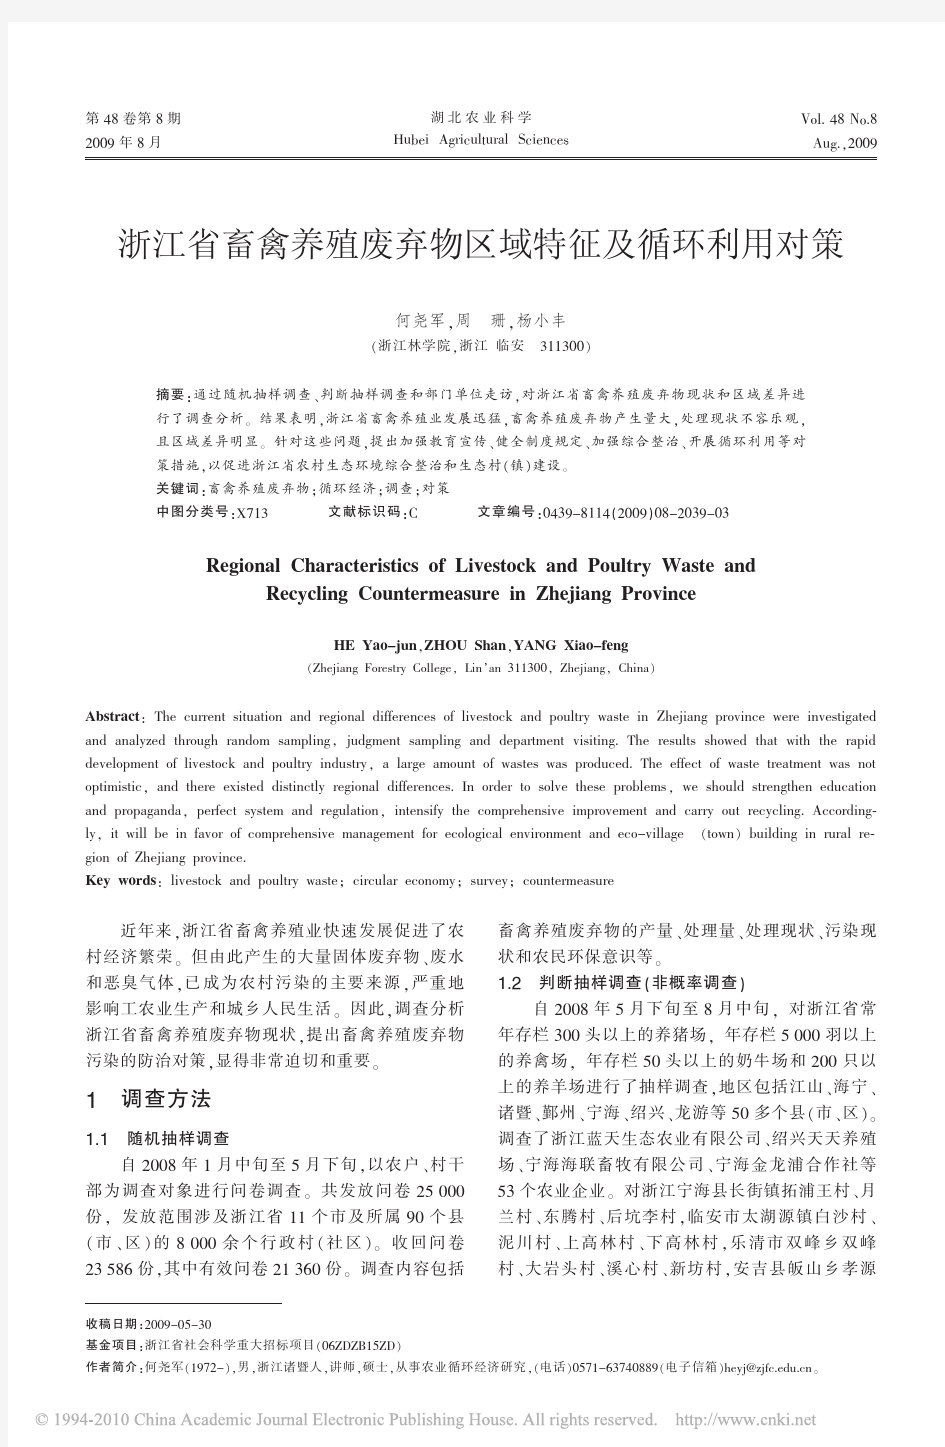 浙江省畜禽养殖废弃物区域特征及循环利用对策